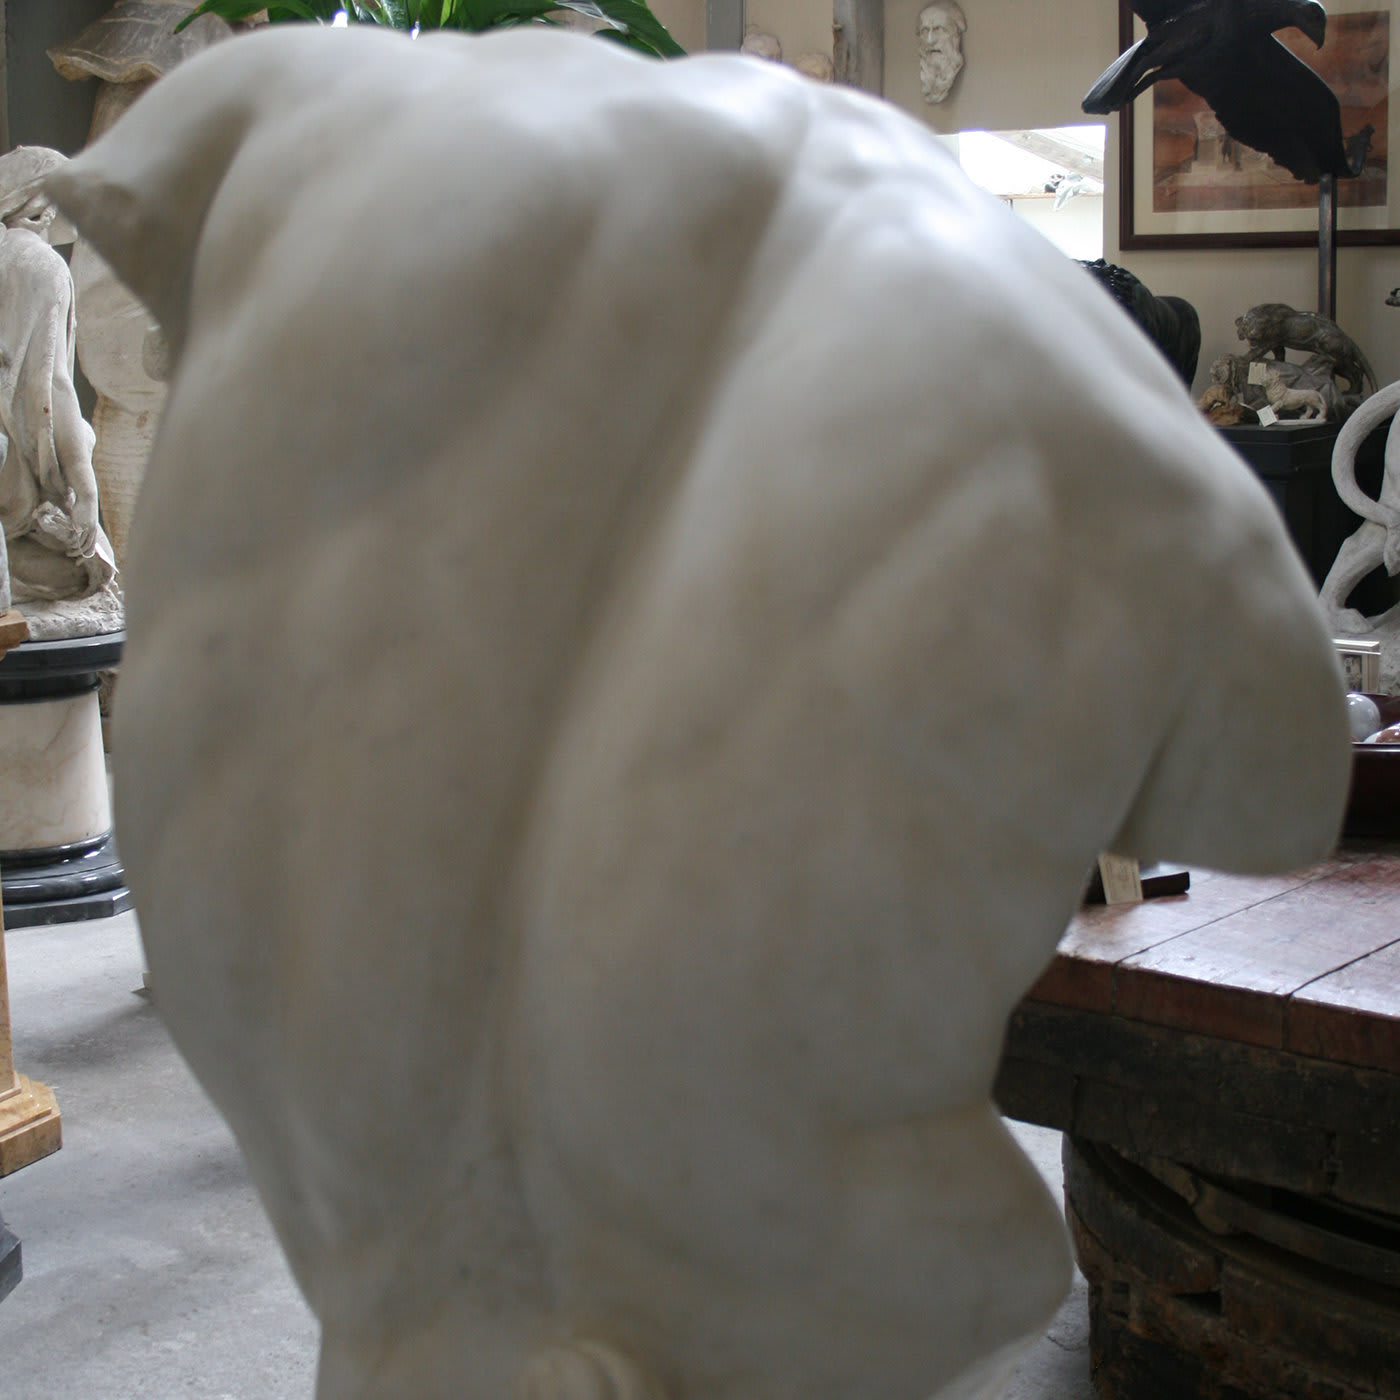 Gaddi Torso Marble Sculpture - Galleria Romanelli